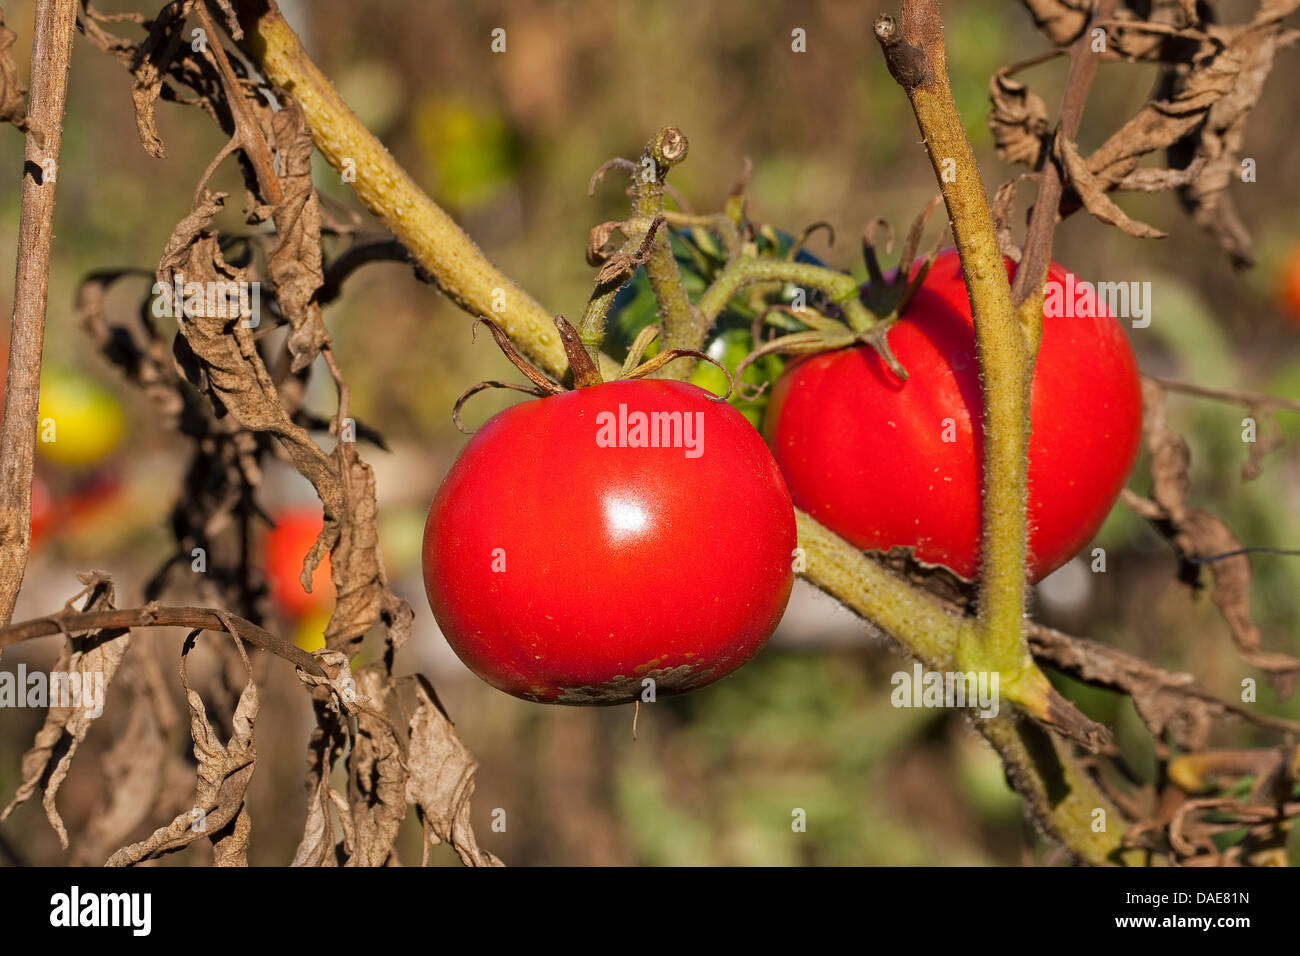 Jardin la tomate (Solanum lycopersicum, Lycopersicon esculentum), arbustes à fruits mûrs Banque D'Images